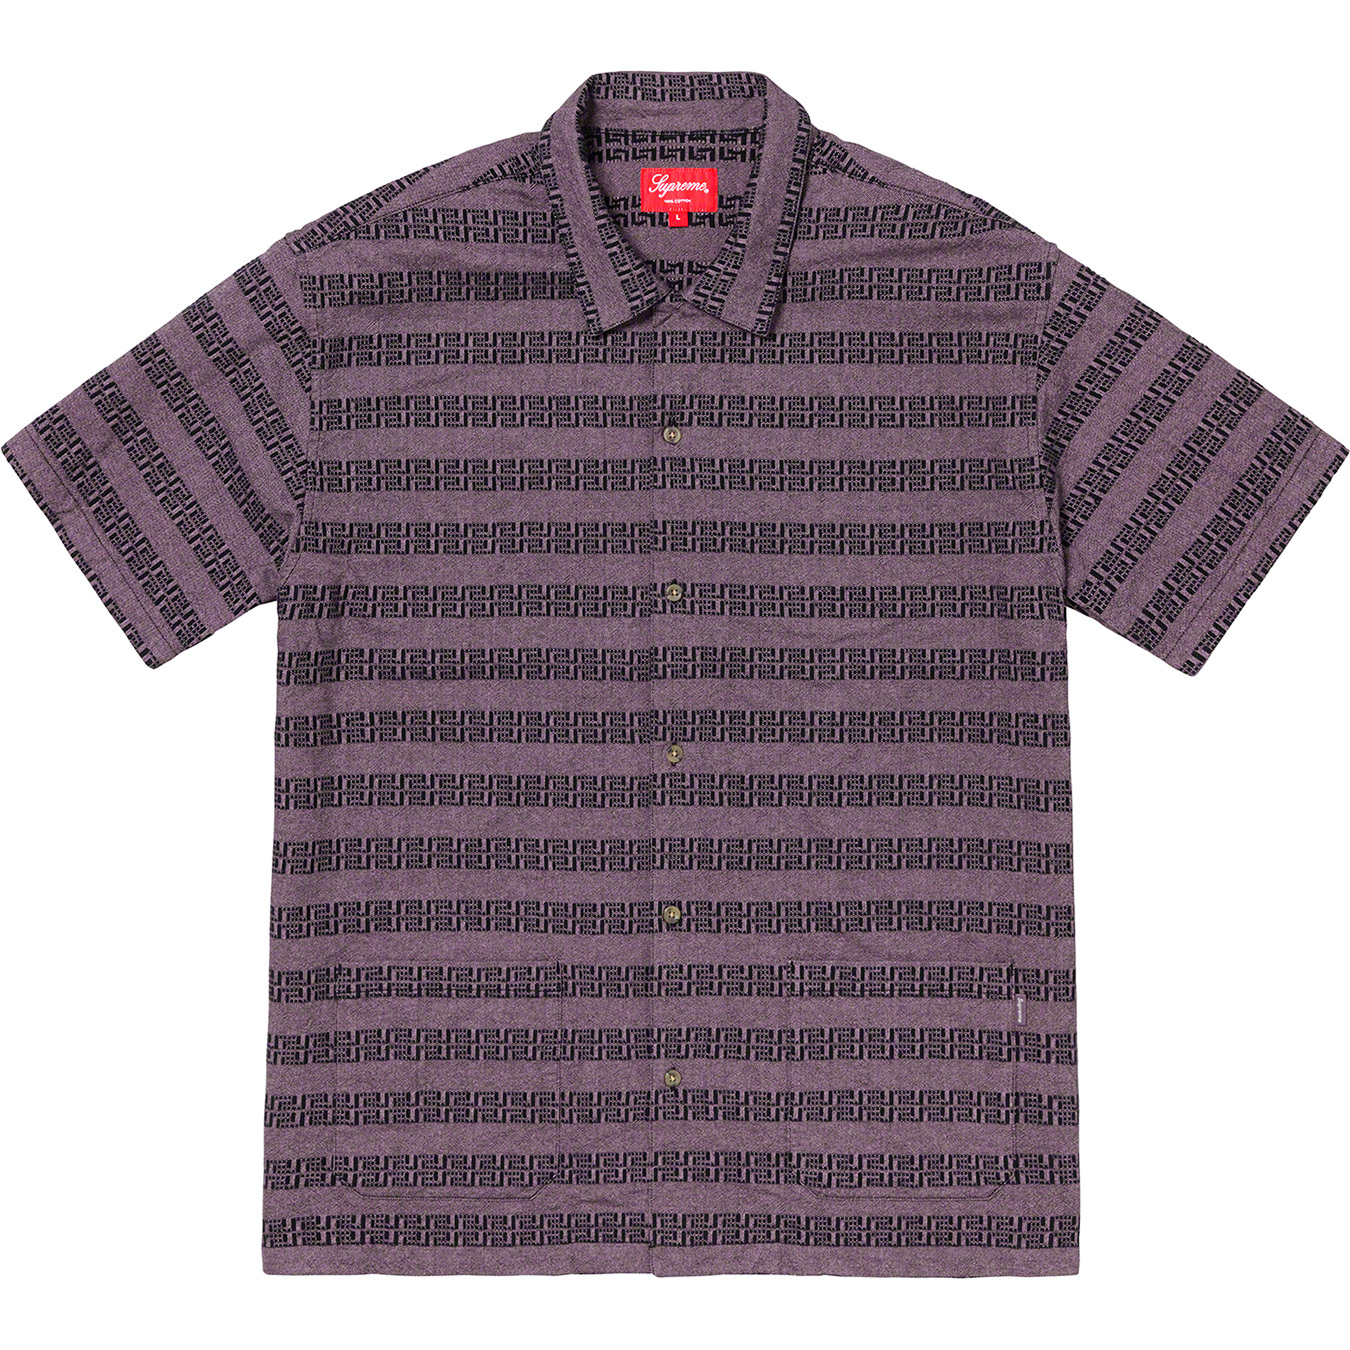 Supreme Key Stripe S/S Shirt